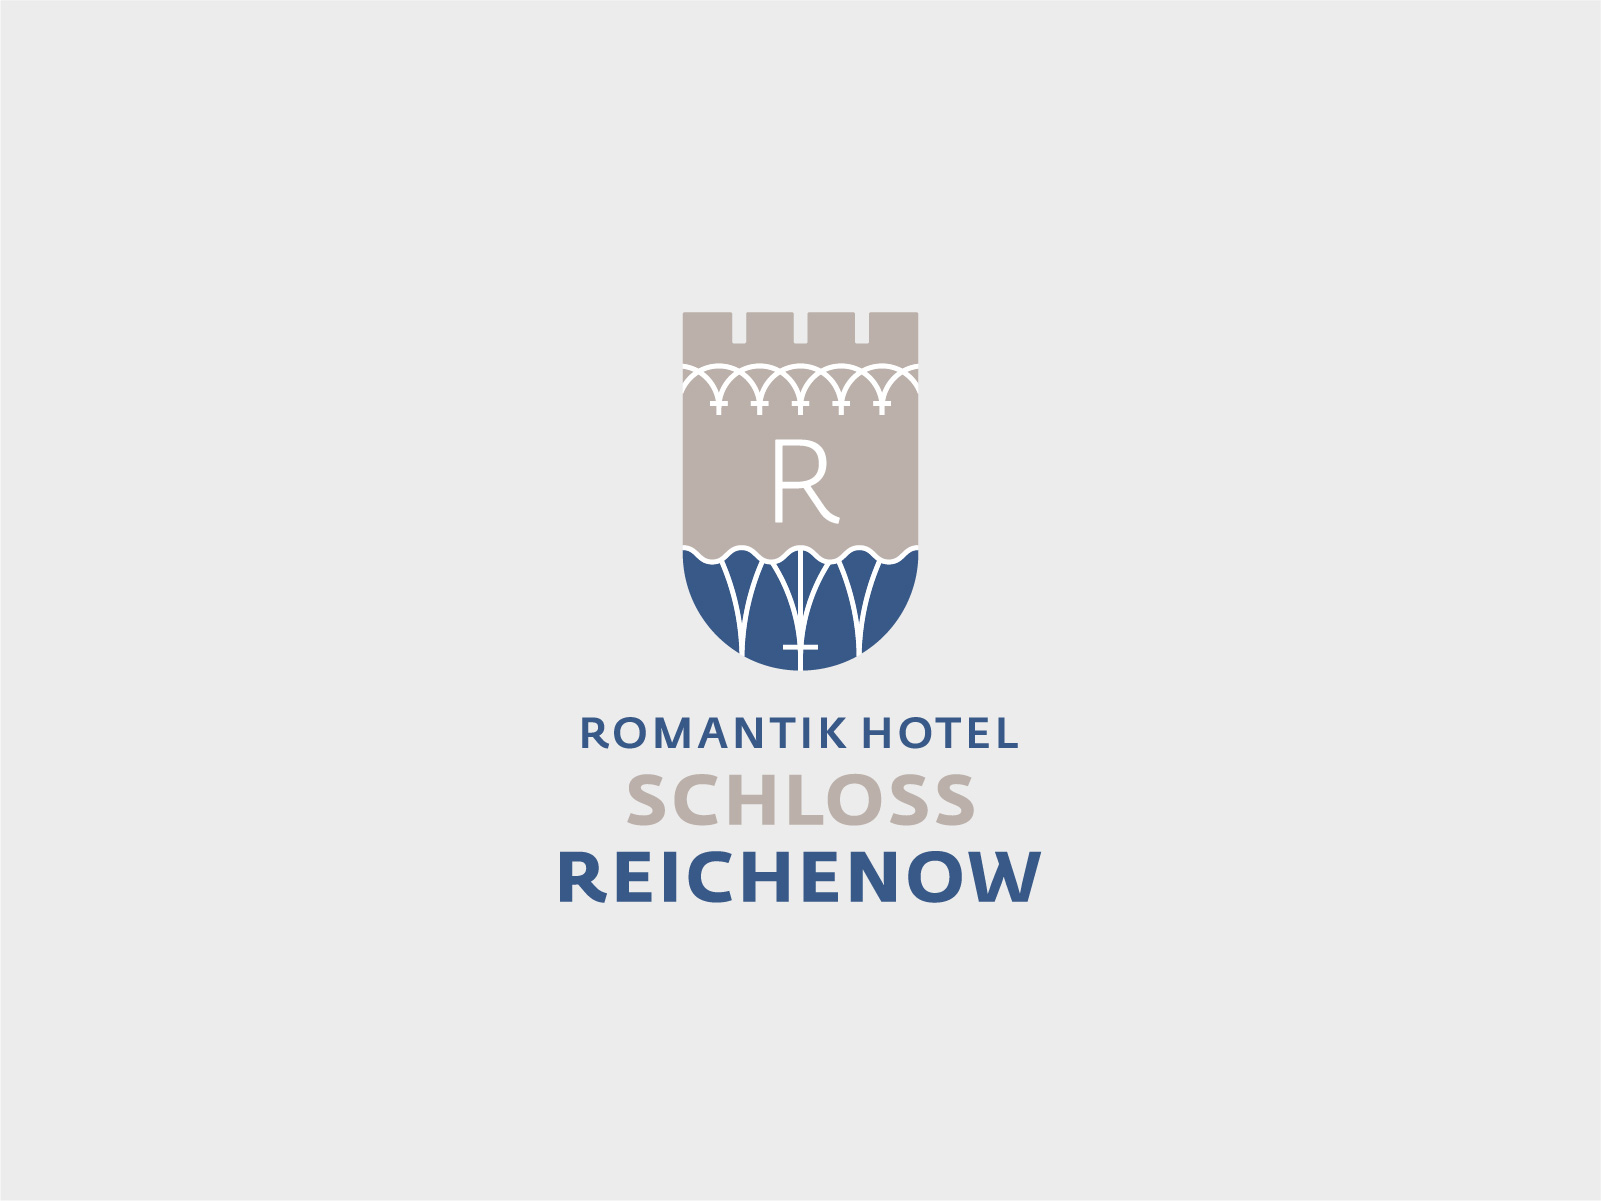 SchlosshotelReichenow_72dpi